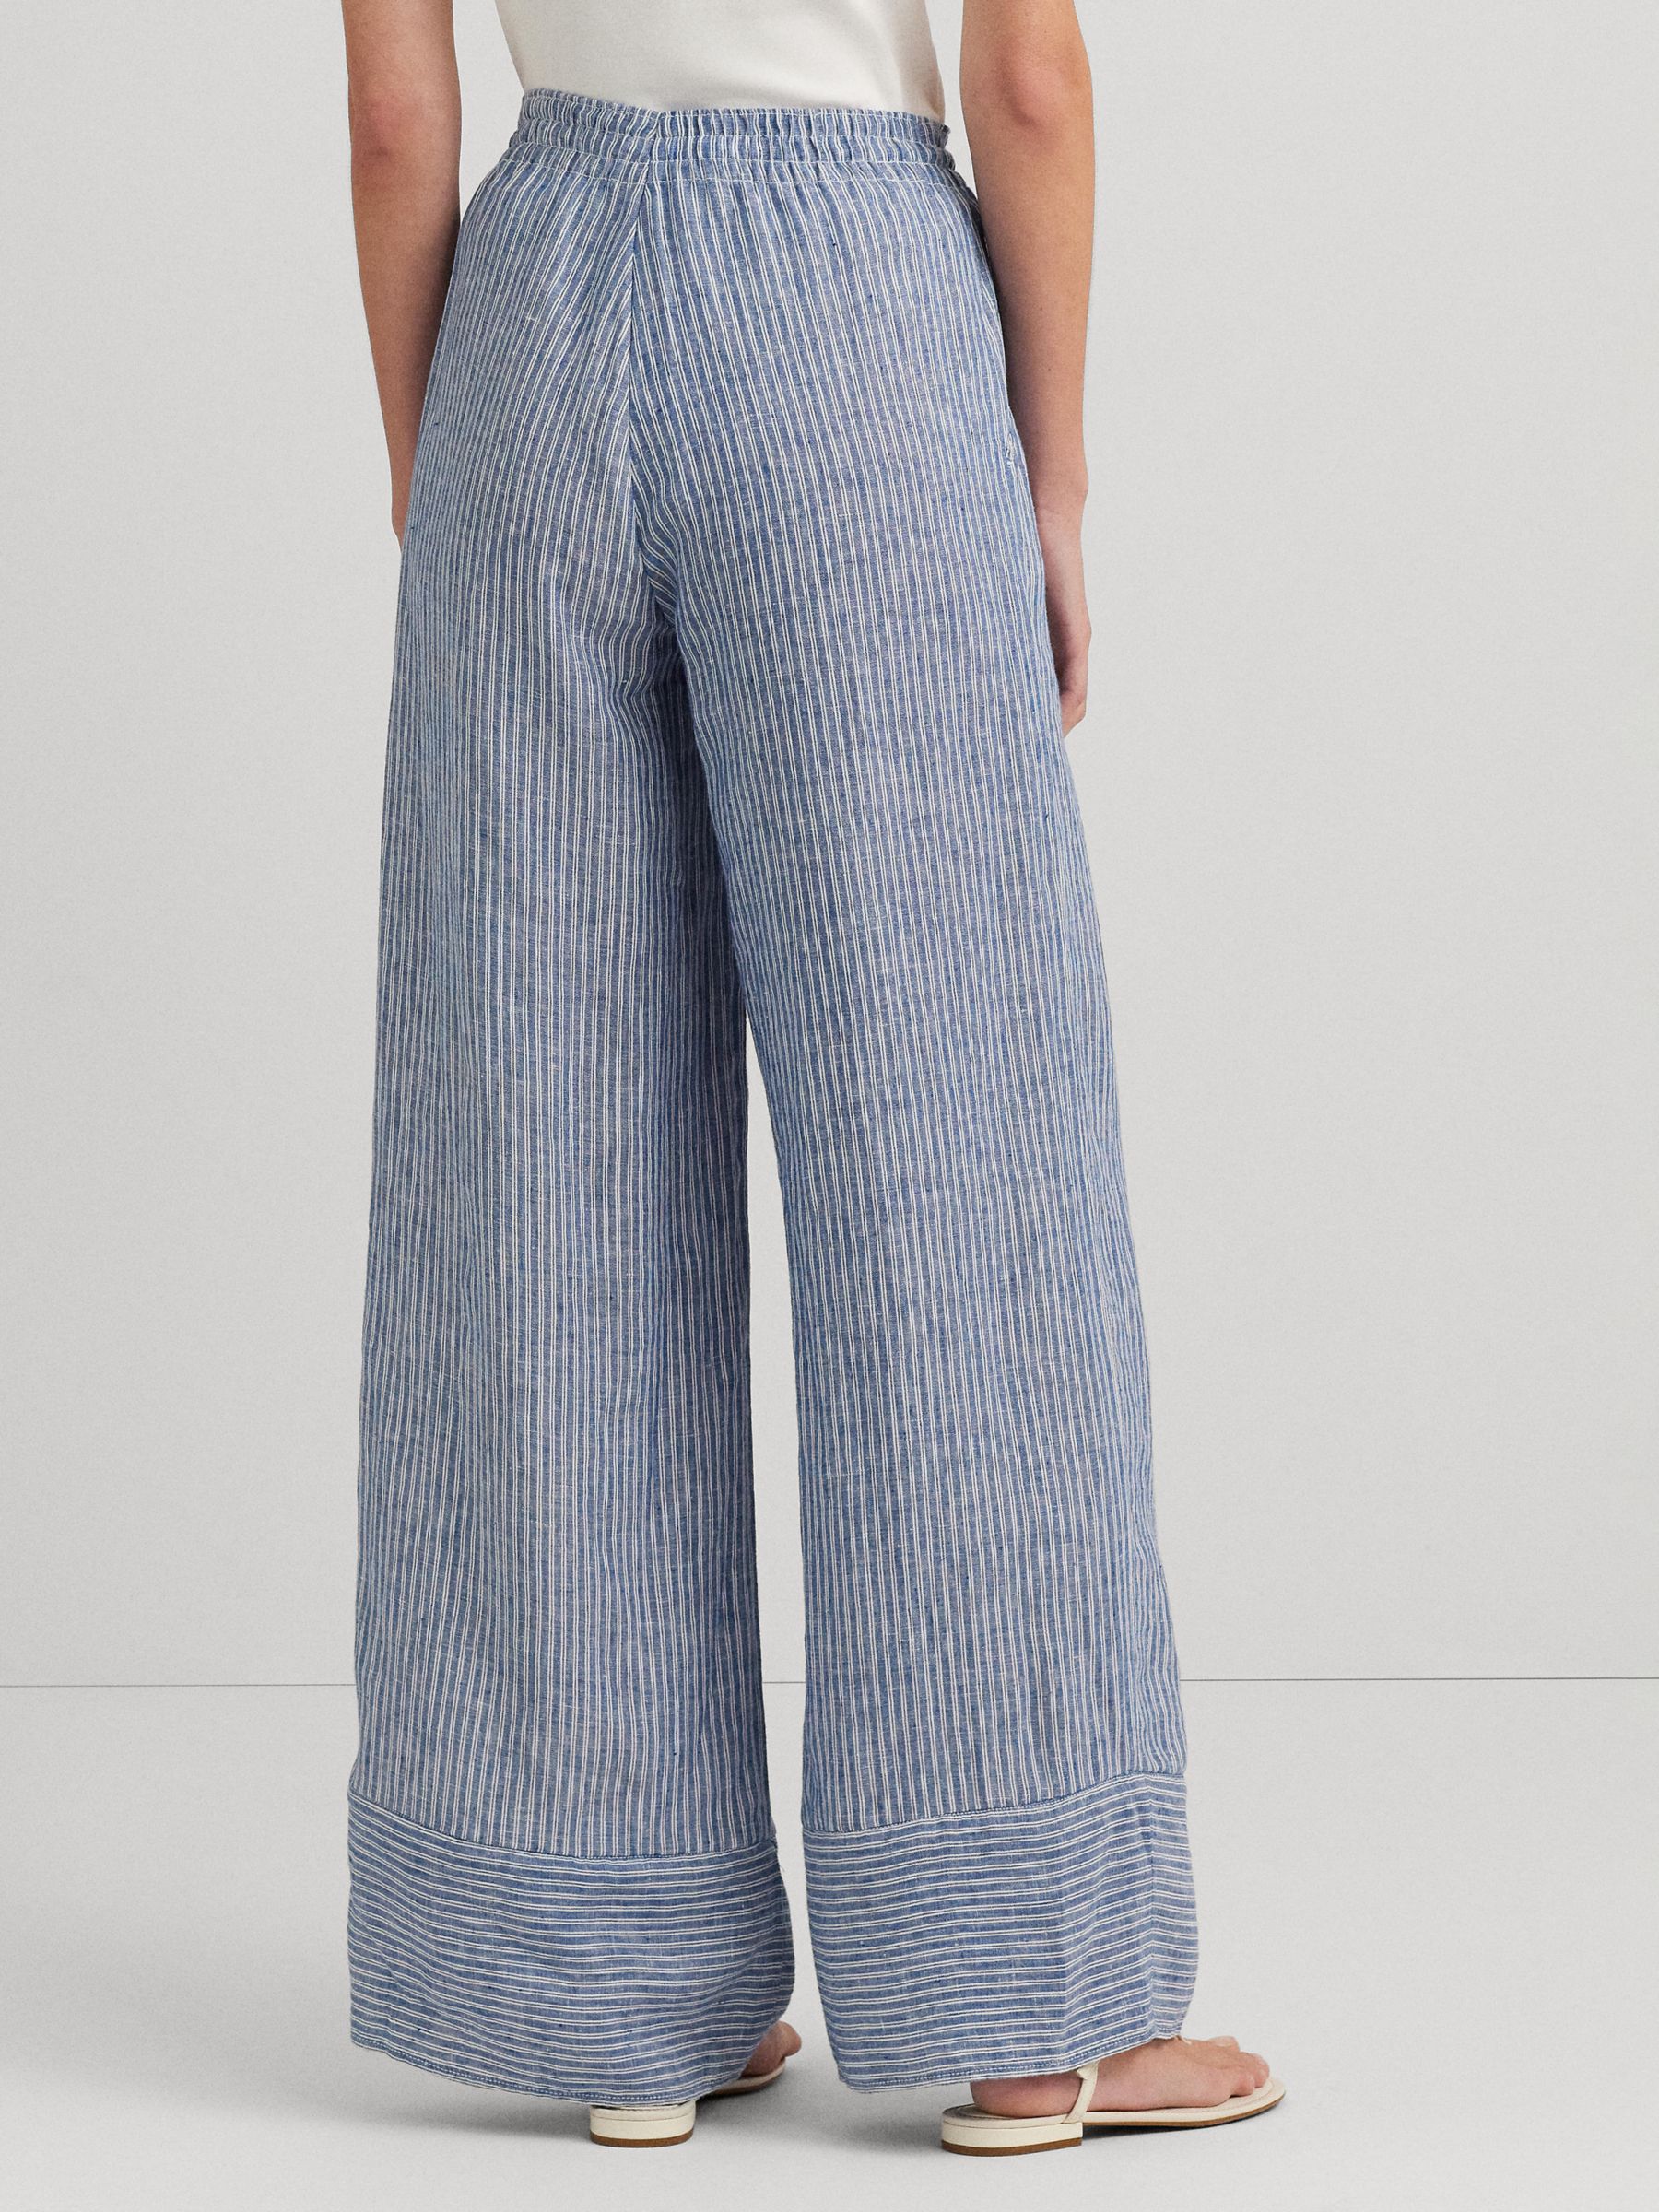 Lauren Ralph Lauren Ziakash Stripe Linen Blend Trousers, Blue/Multi, XXS